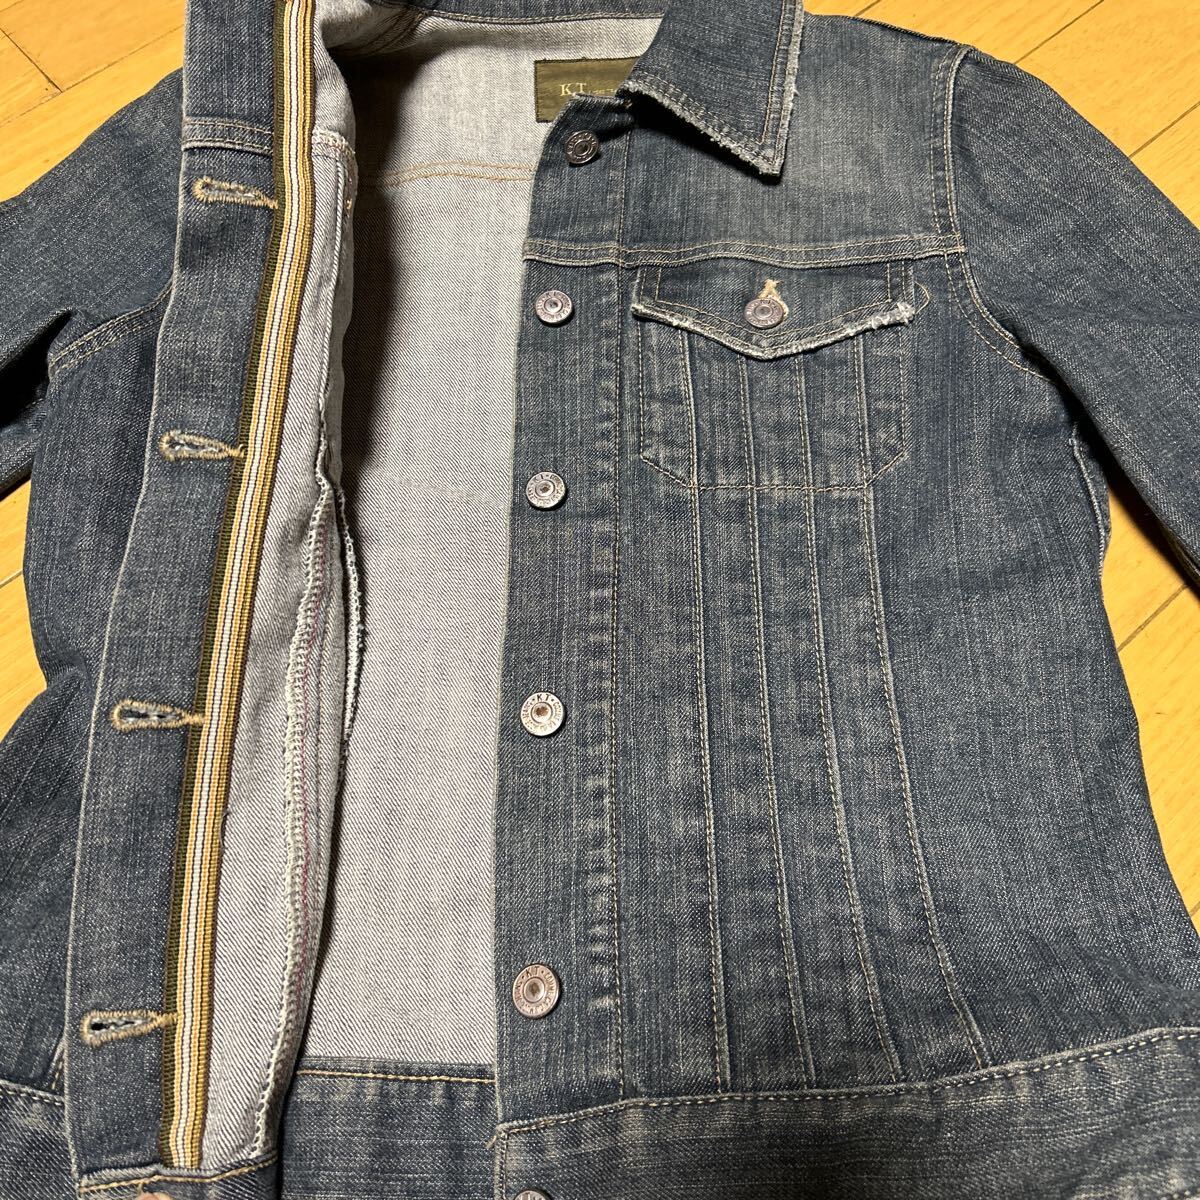 ＫＴ　... режим 　... бок  ...　 Denim   пиджак 　 рекомендуемая розничная цена 40000  йен 　　 почти   неиспользуемый 　 такой же, как новый товар 　11 номер  　 Denim  　L размер  　 Levi's   любимый 